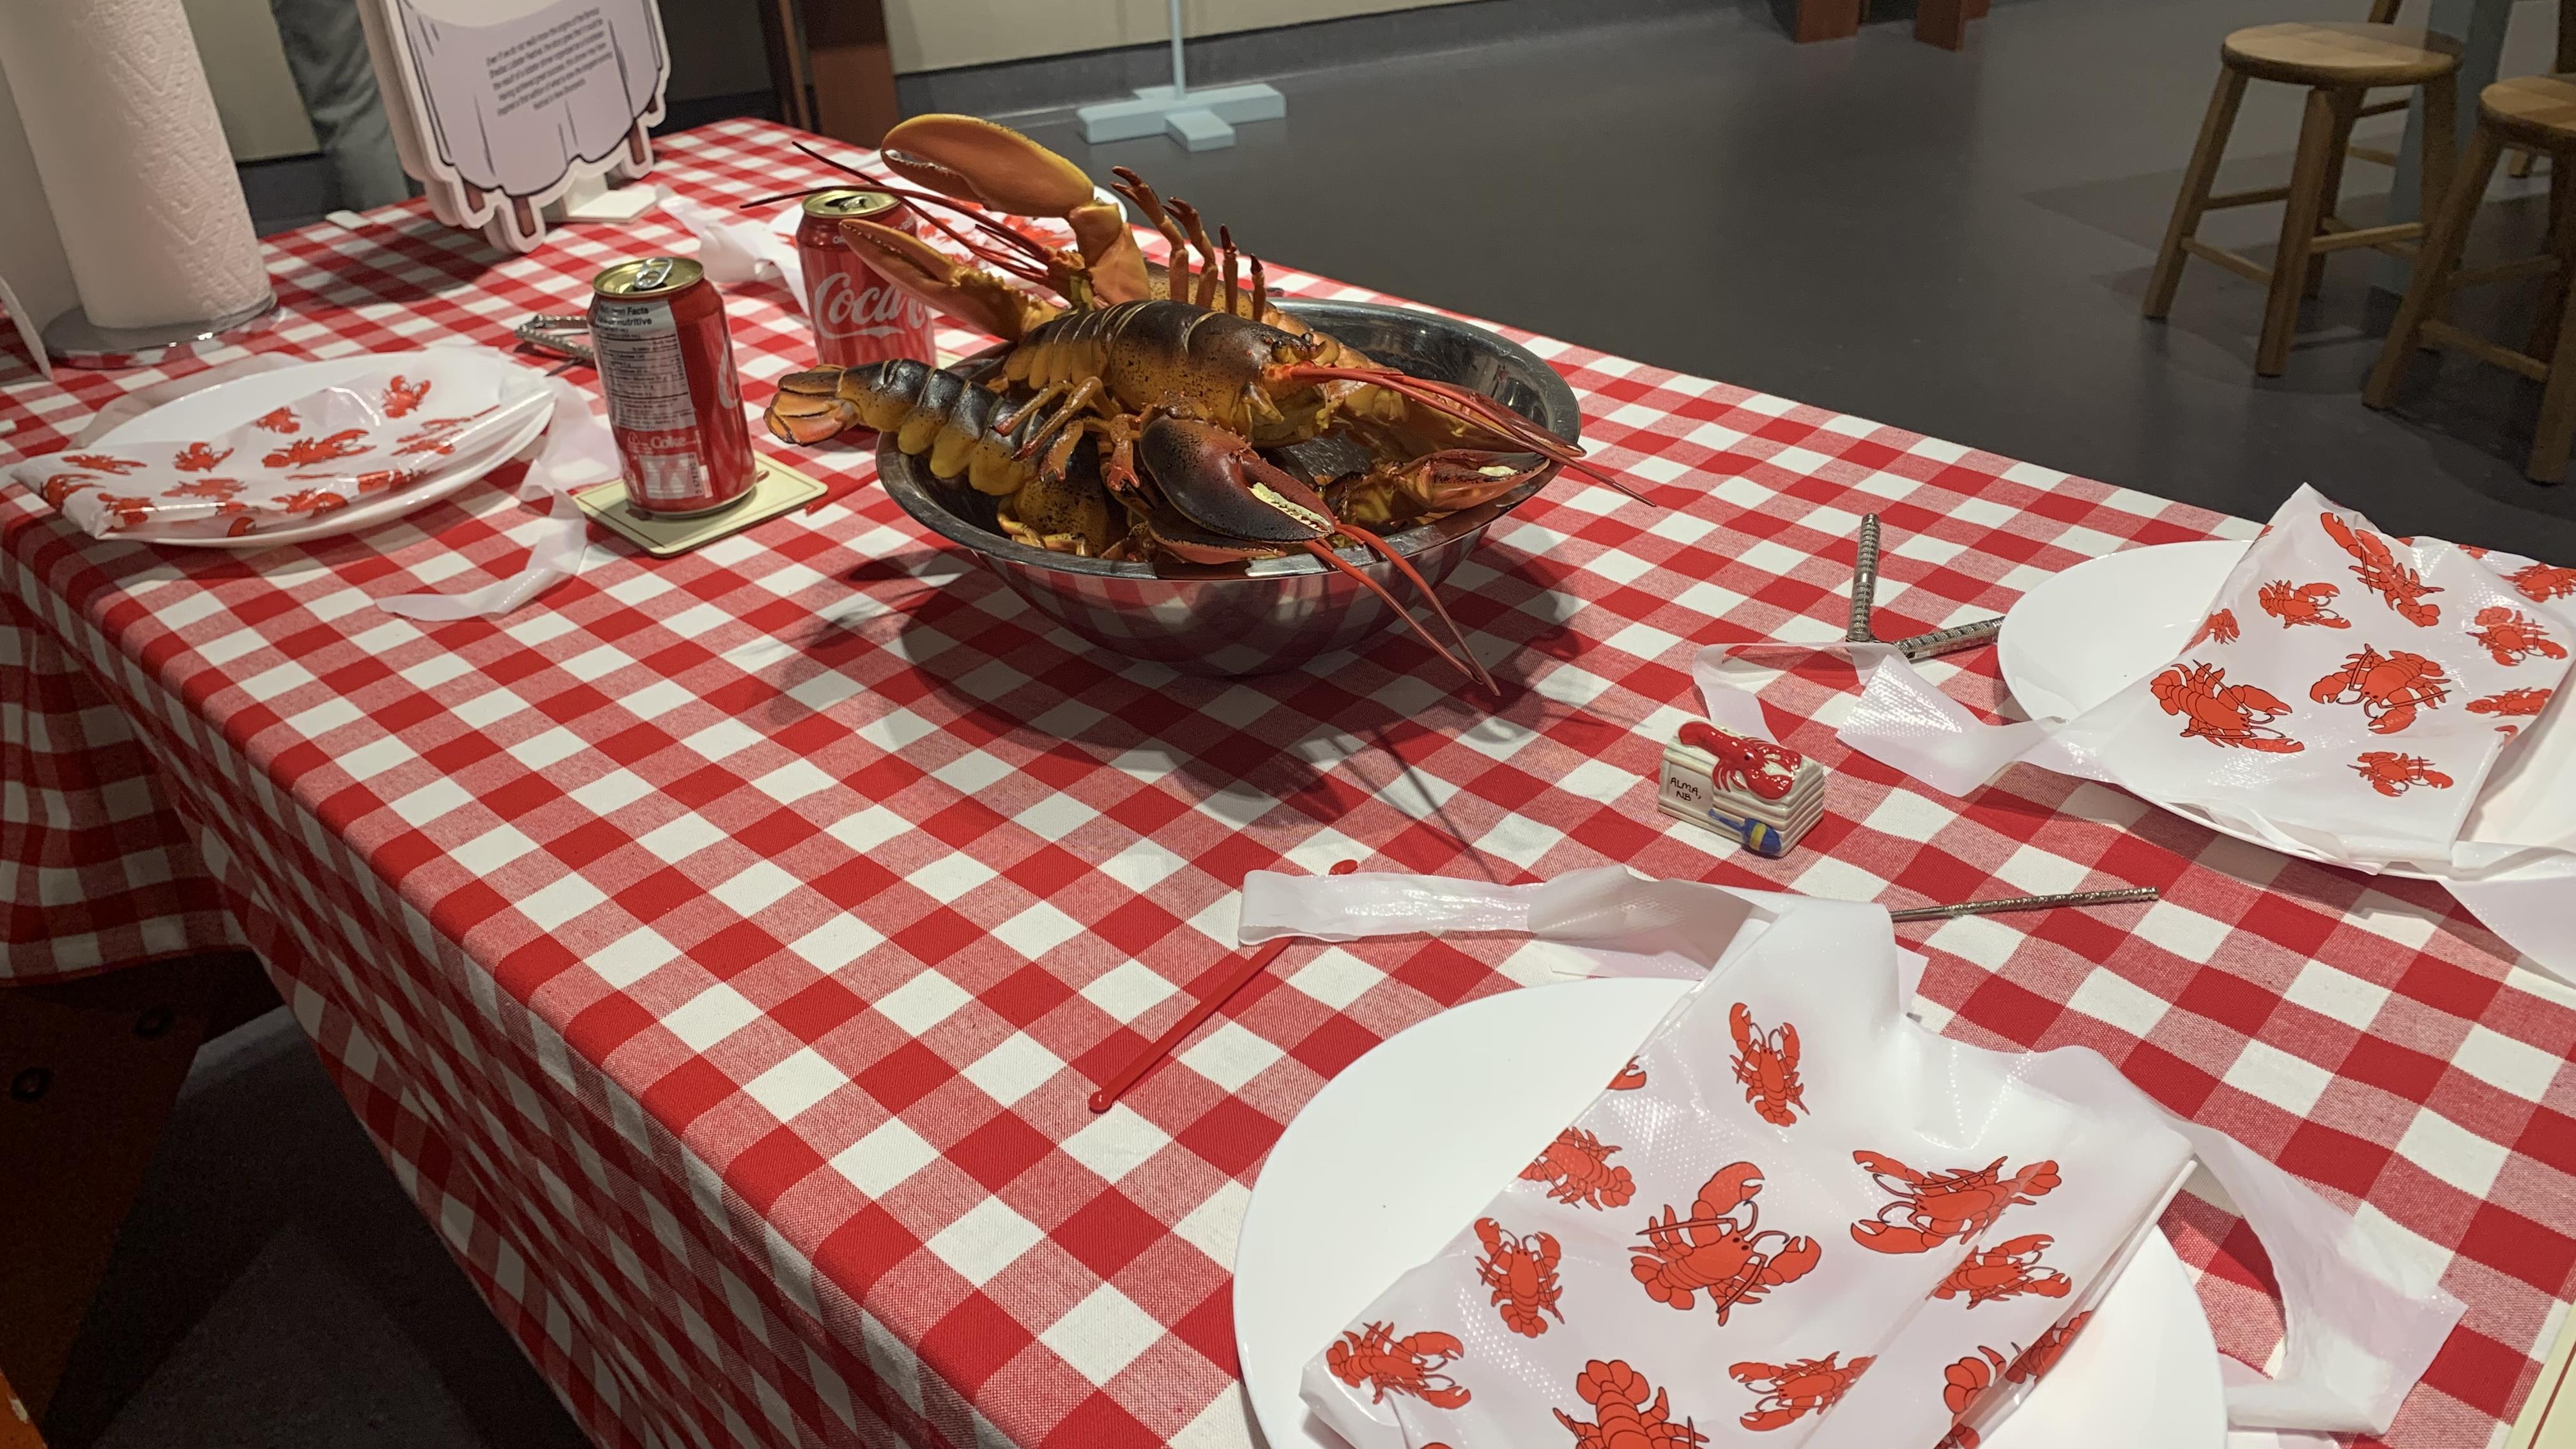 L’influence du homard dans la culture populaire au centre d’une exposition
L’influence du homard dans la culture populaire au centre d’une exposition